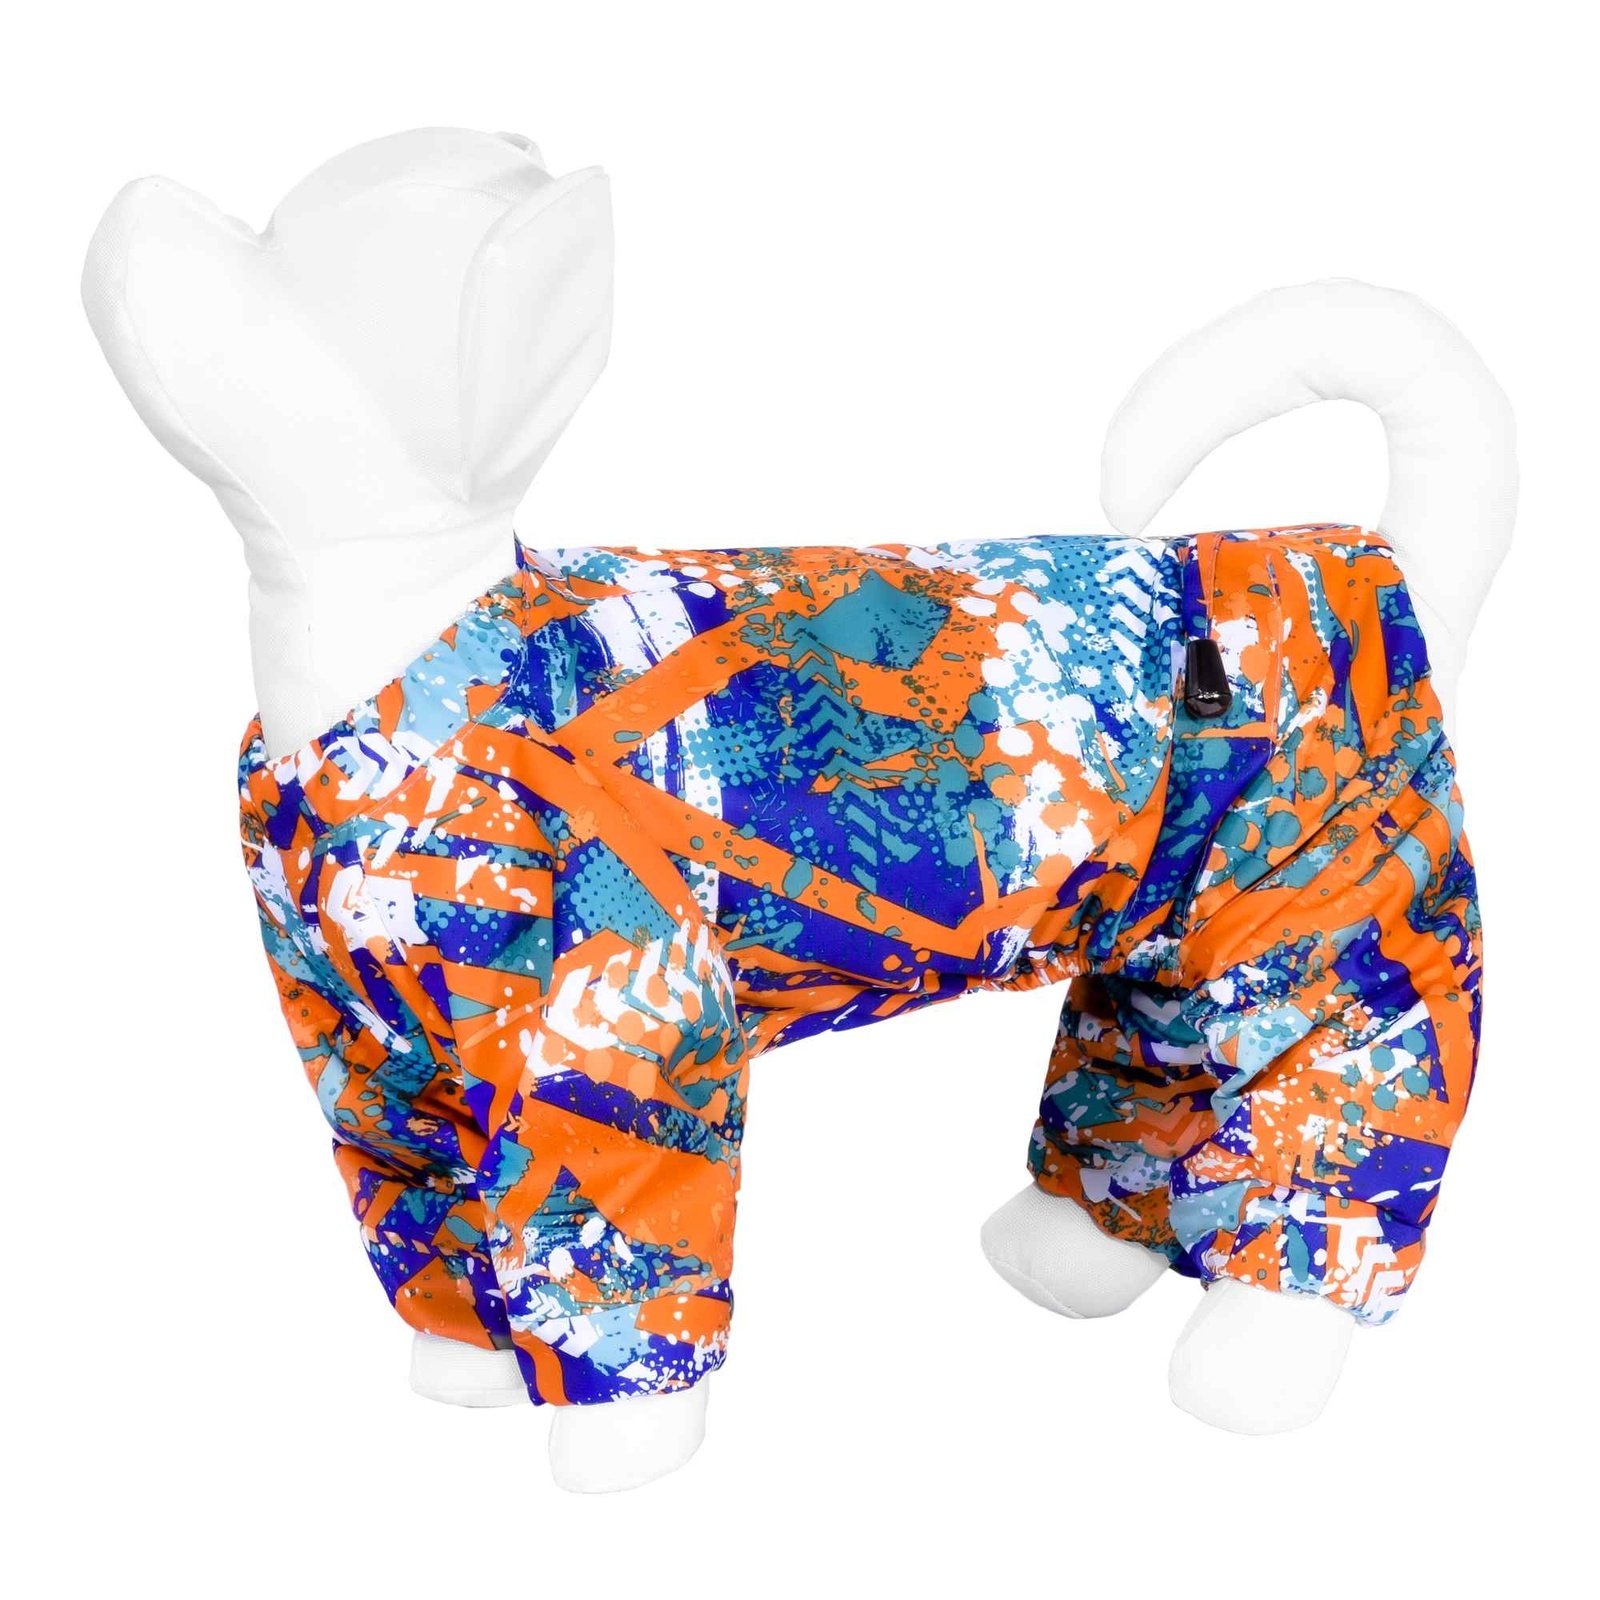 Yami-Yami одежда Yami-Yami одежда дождевик для собаки с рисунком «Абстракция», оранжевый (80 г)